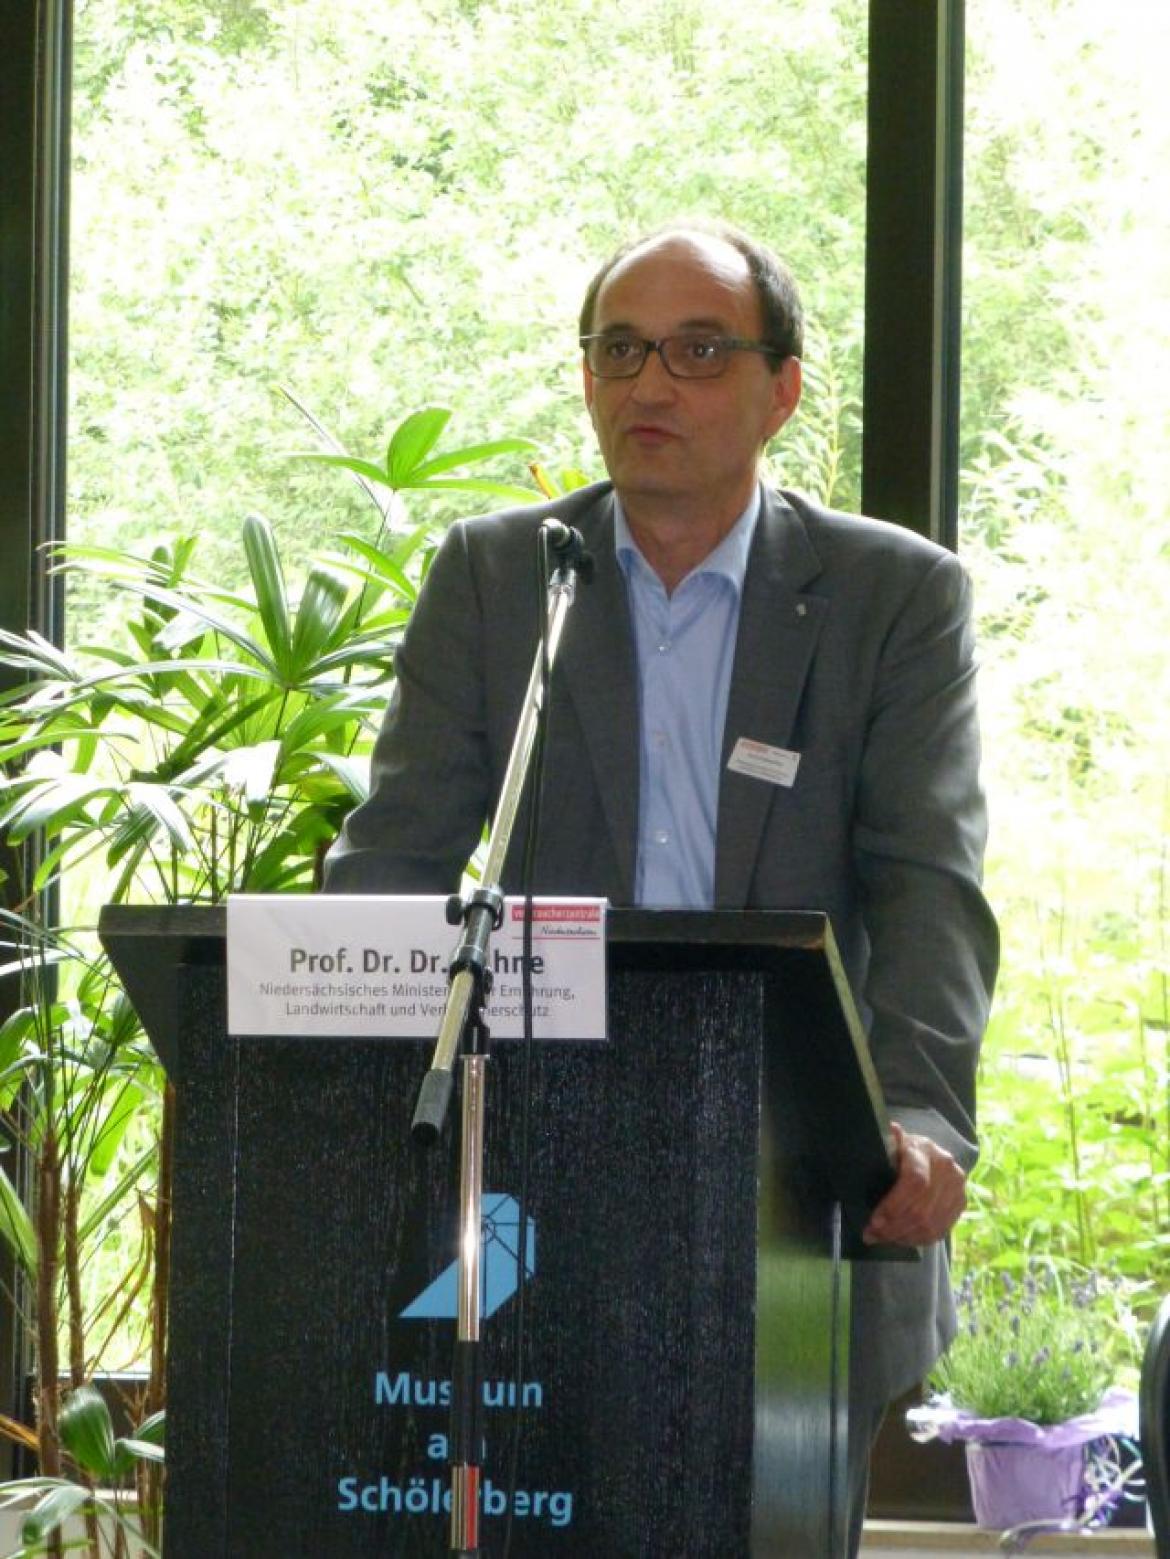 Prof. Dr. Dr. Kühne, Abteilungsleiter im Nds. Ministerium für Ernährung, Landwirtschaft und Verbraucherschutz hält Grußworte